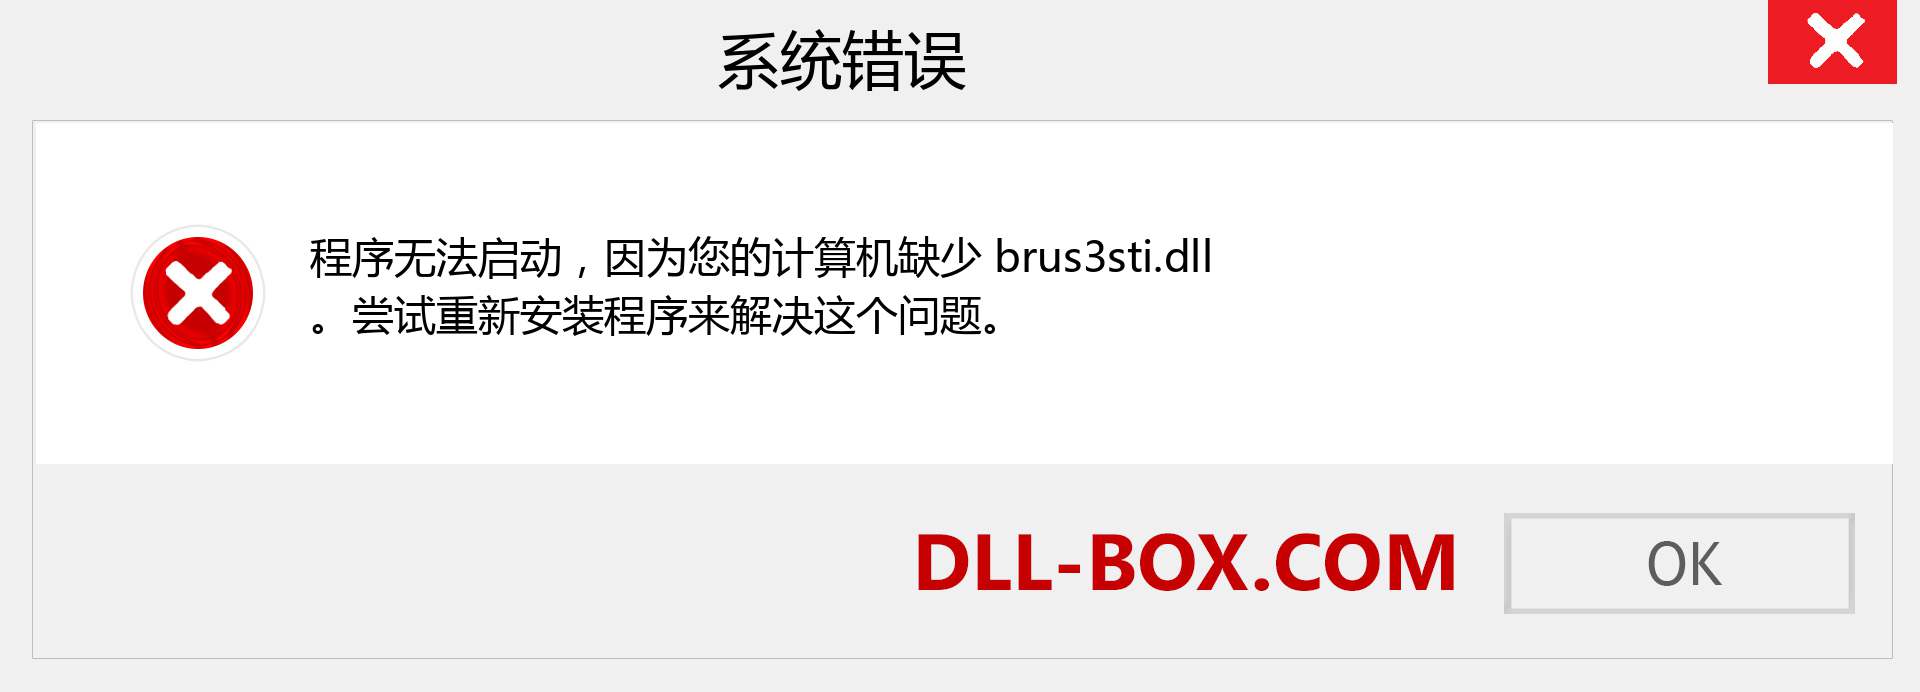 brus3sti.dll 文件丢失？。 适用于 Windows 7、8、10 的下载 - 修复 Windows、照片、图像上的 brus3sti dll 丢失错误